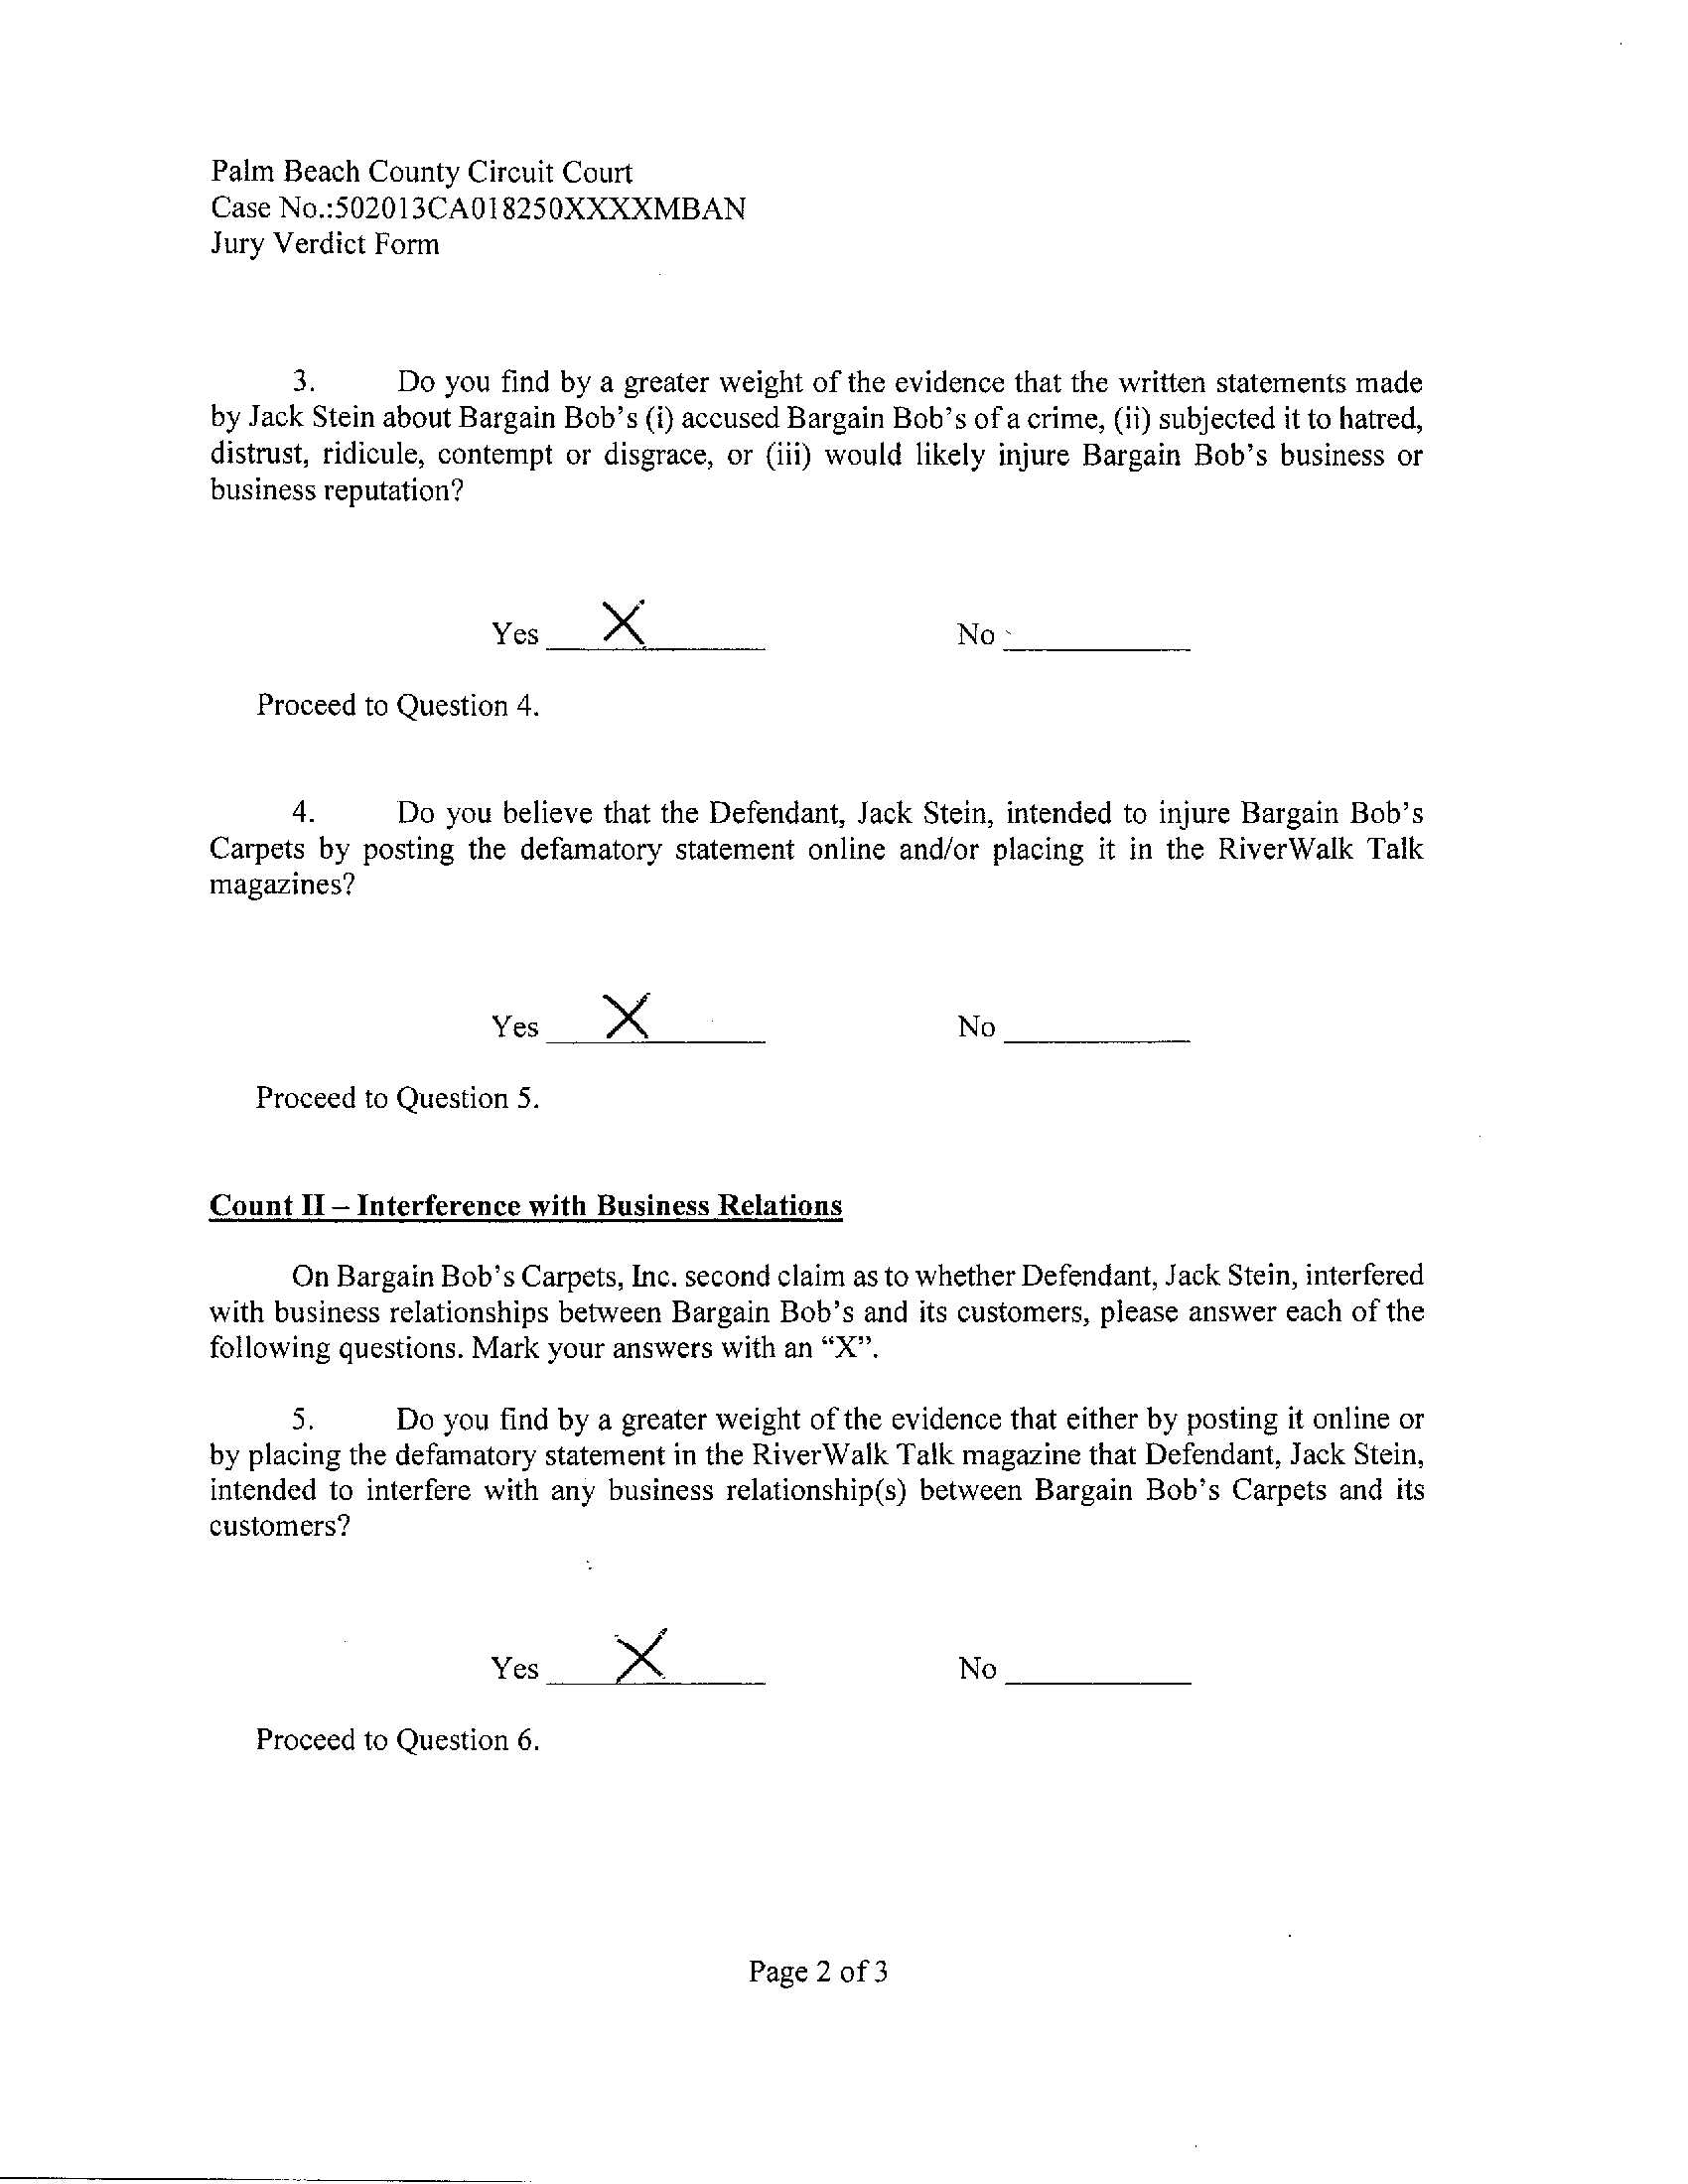 Jury Verdict Page 2 of 3